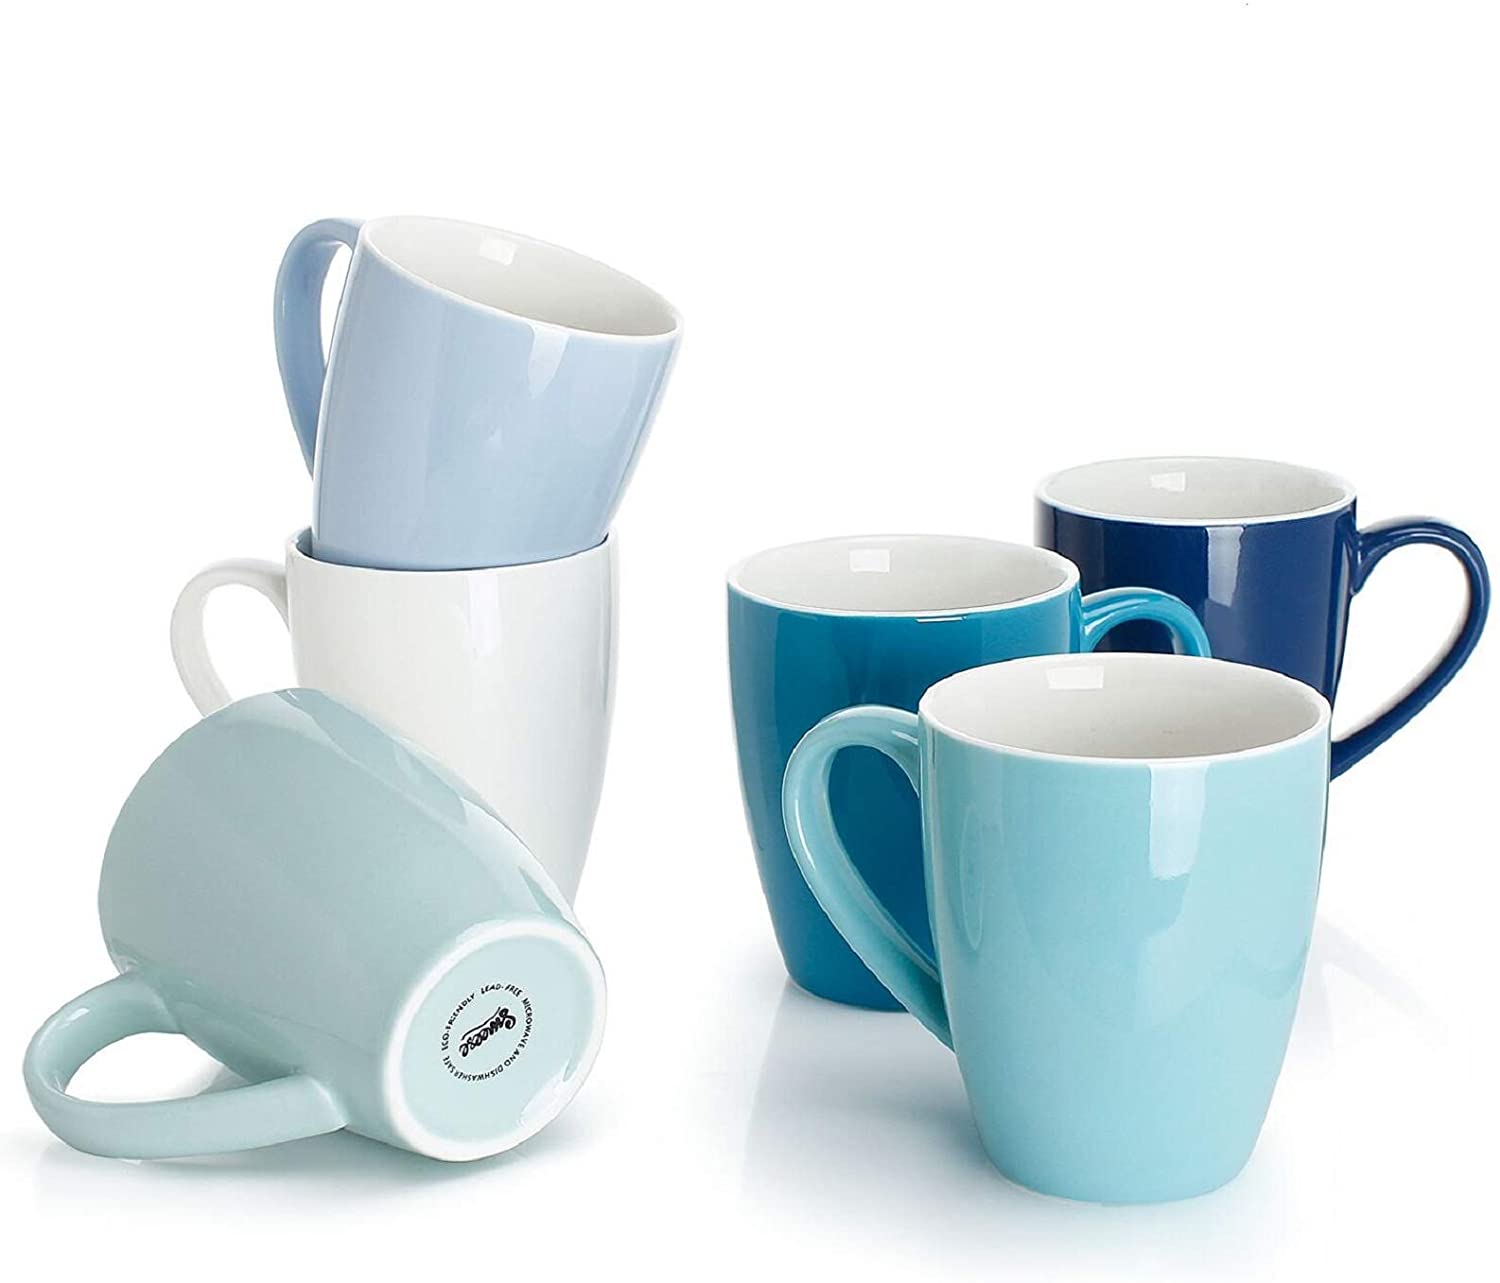 Sweese 16-Ounce Porcelain Coffee Mug Set, 6-Piece